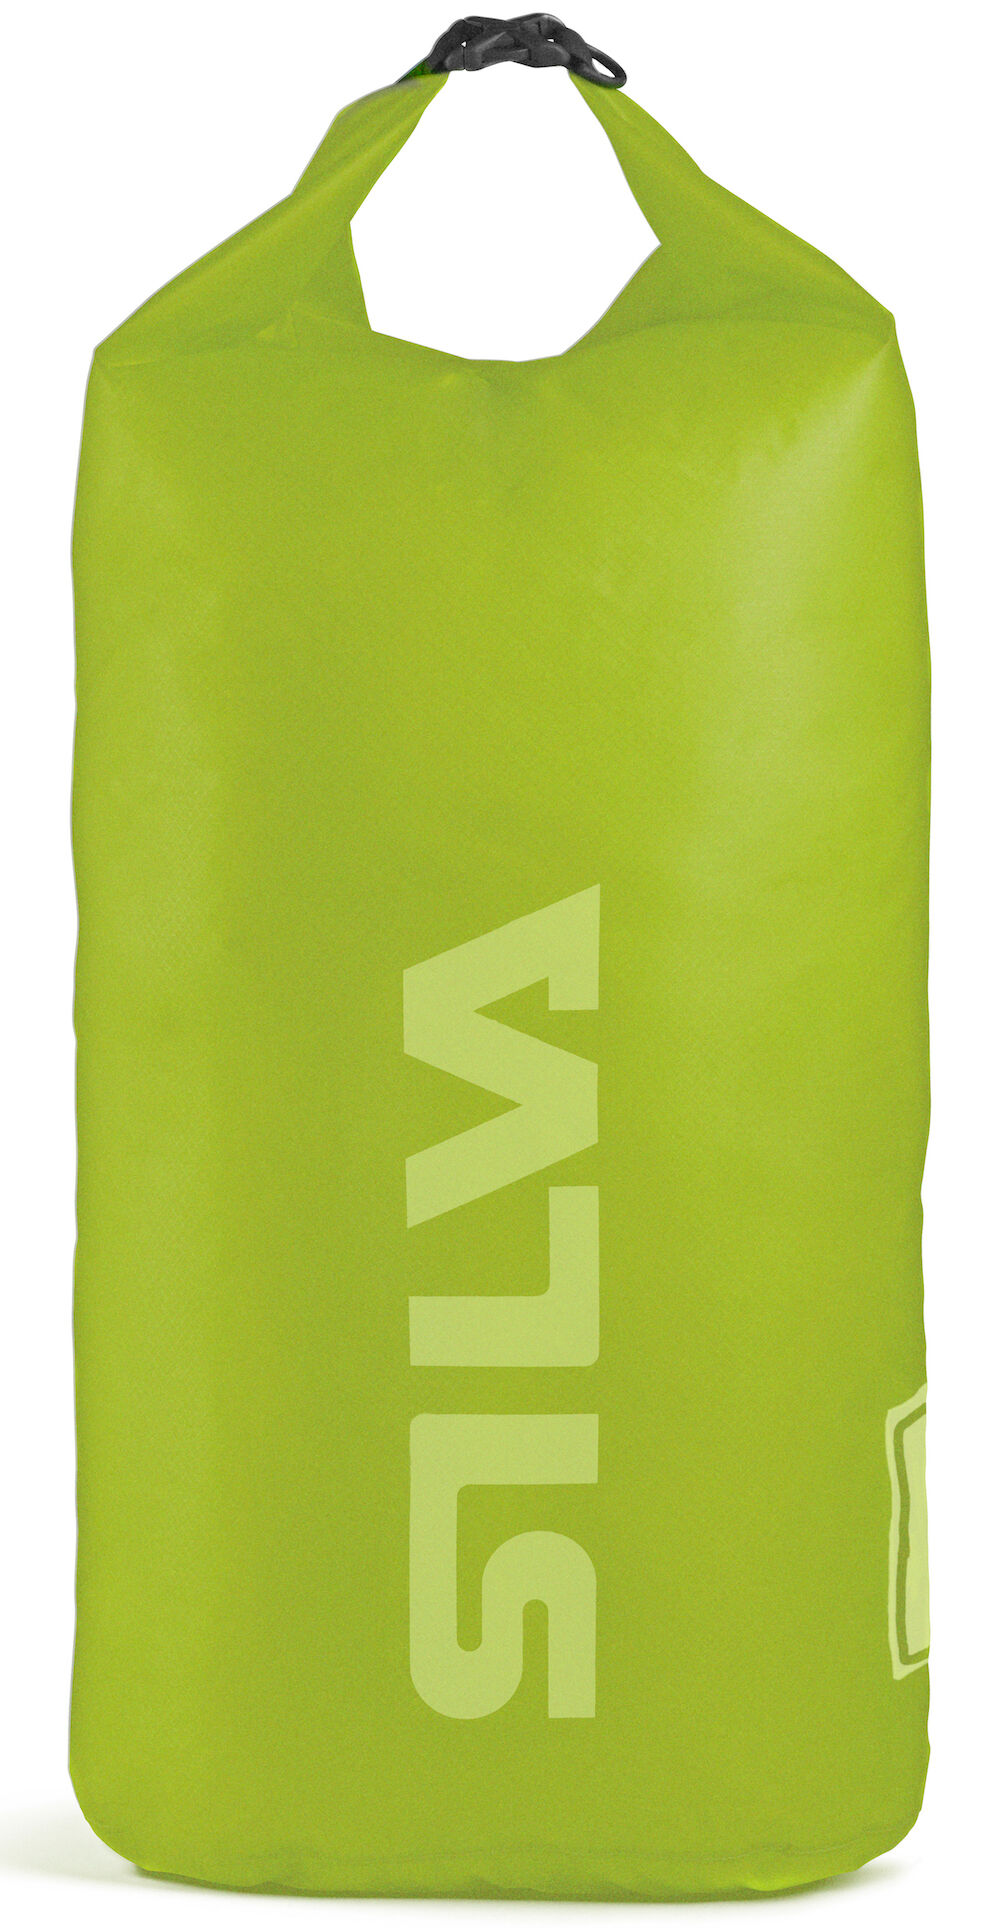 Silva Carry Dry Bag 70D - 24L